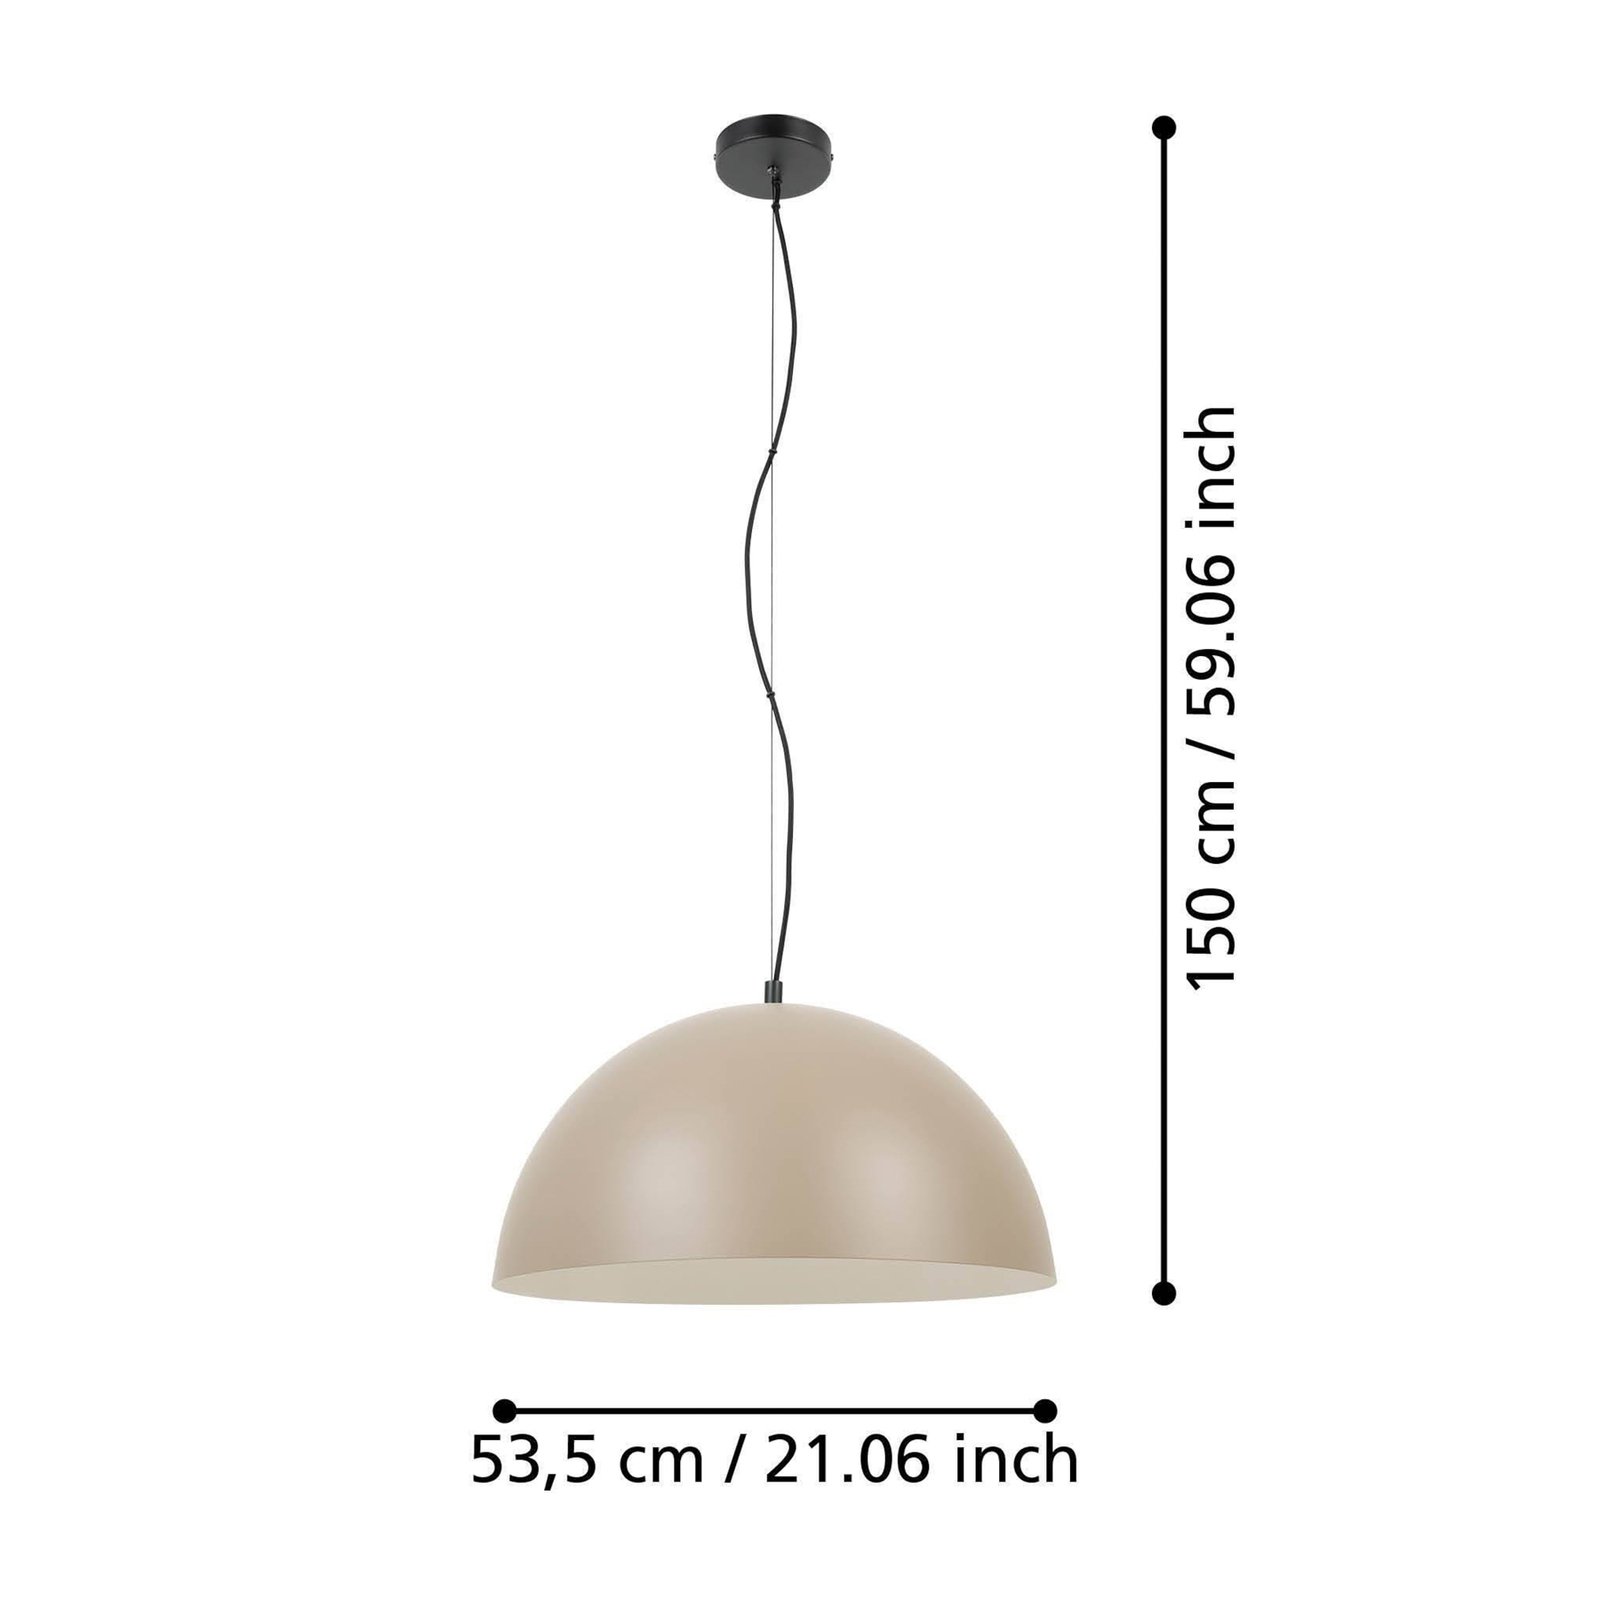 Lampa wisząca Gaetano 1, Ø 53 cm, piaskowy/kremowy, stal